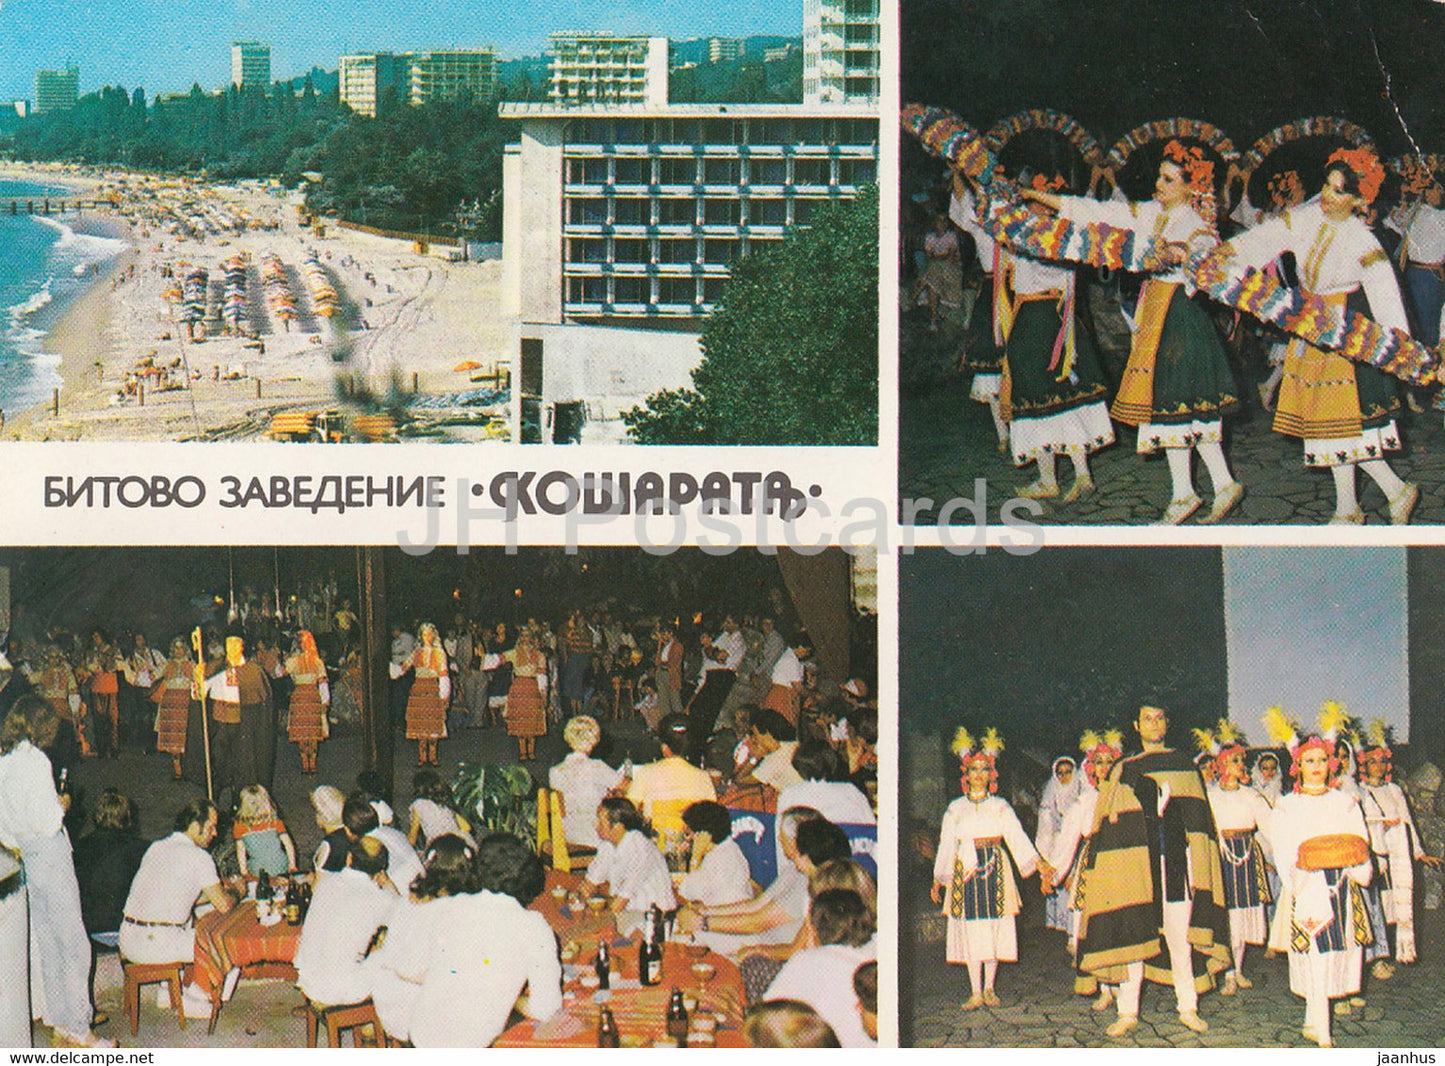 Sunny Beach - Slnchev bryag - restaurant Kosharat - Folk Costumes - 1983 - Bulgaria - used - JH Postcards